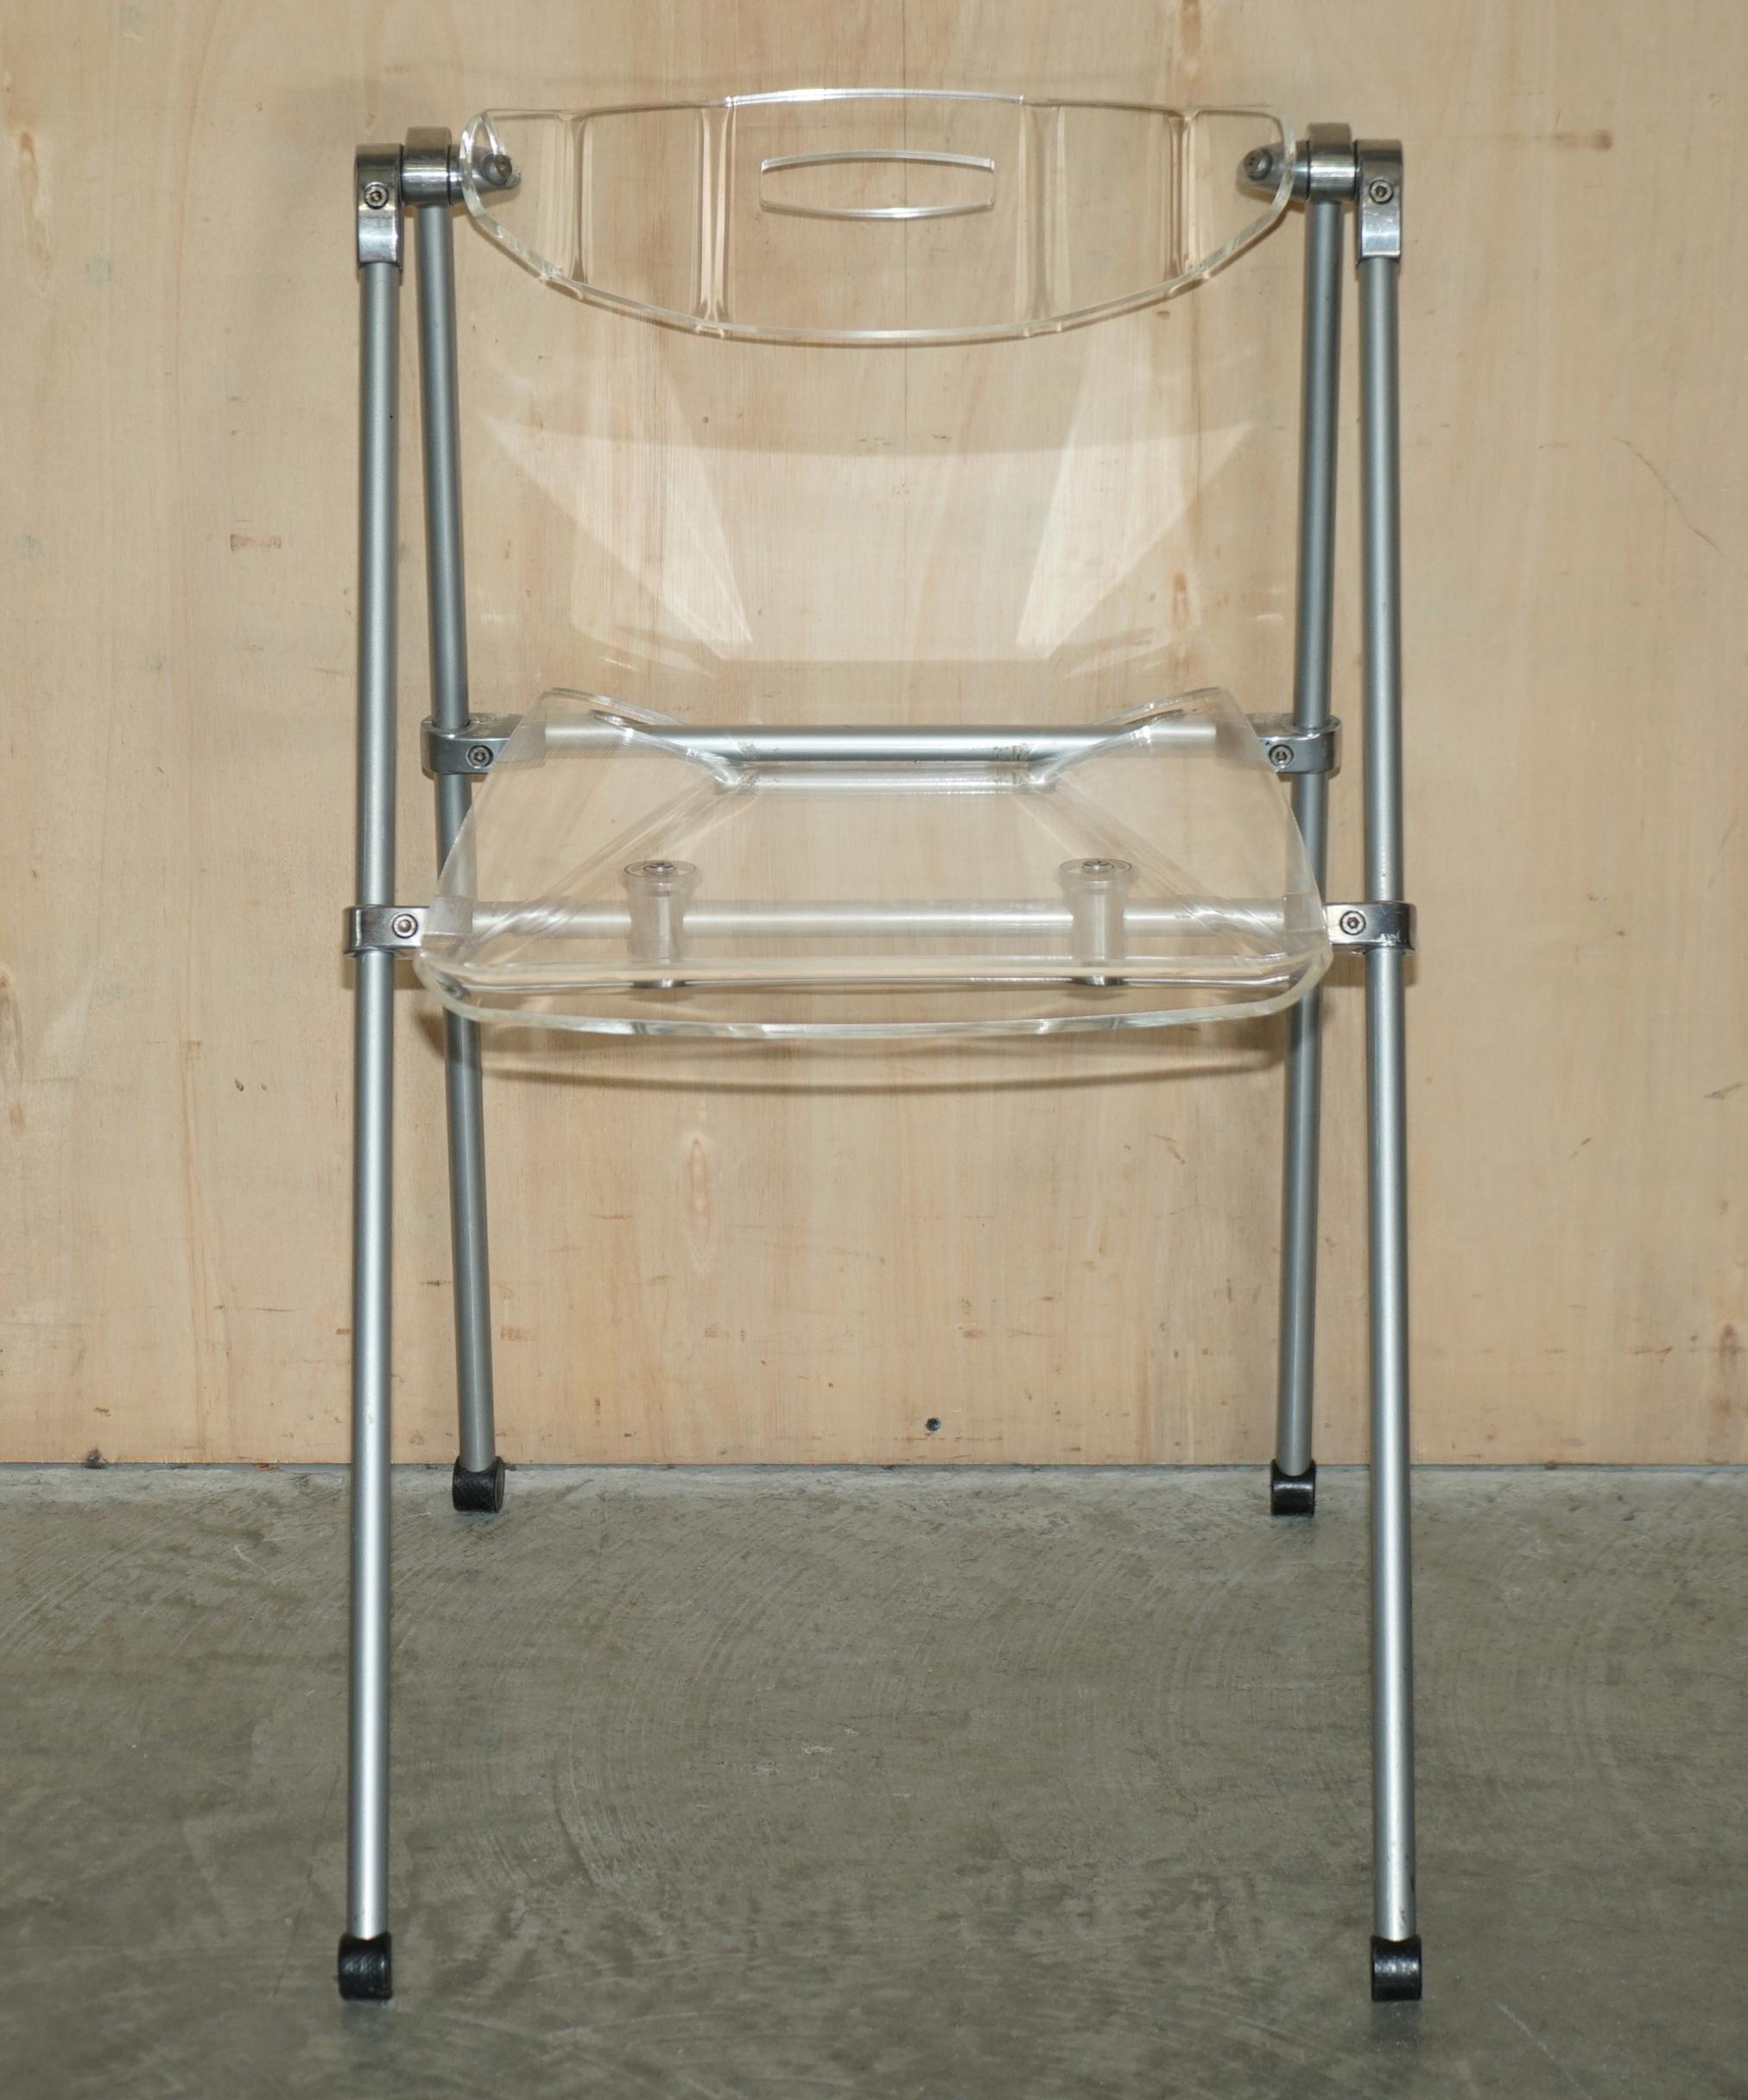 Wir freuen uns, diesen sehr coolen Klappstuhl aus Lucit und Stahl mit schwingender Rückenlehne zum Verkauf anbieten zu können.

Ein sehr gut gemachter Stuhl, der Rahmen ist super industriell und er hat eine dicke bequeme Lucite Garnitur und